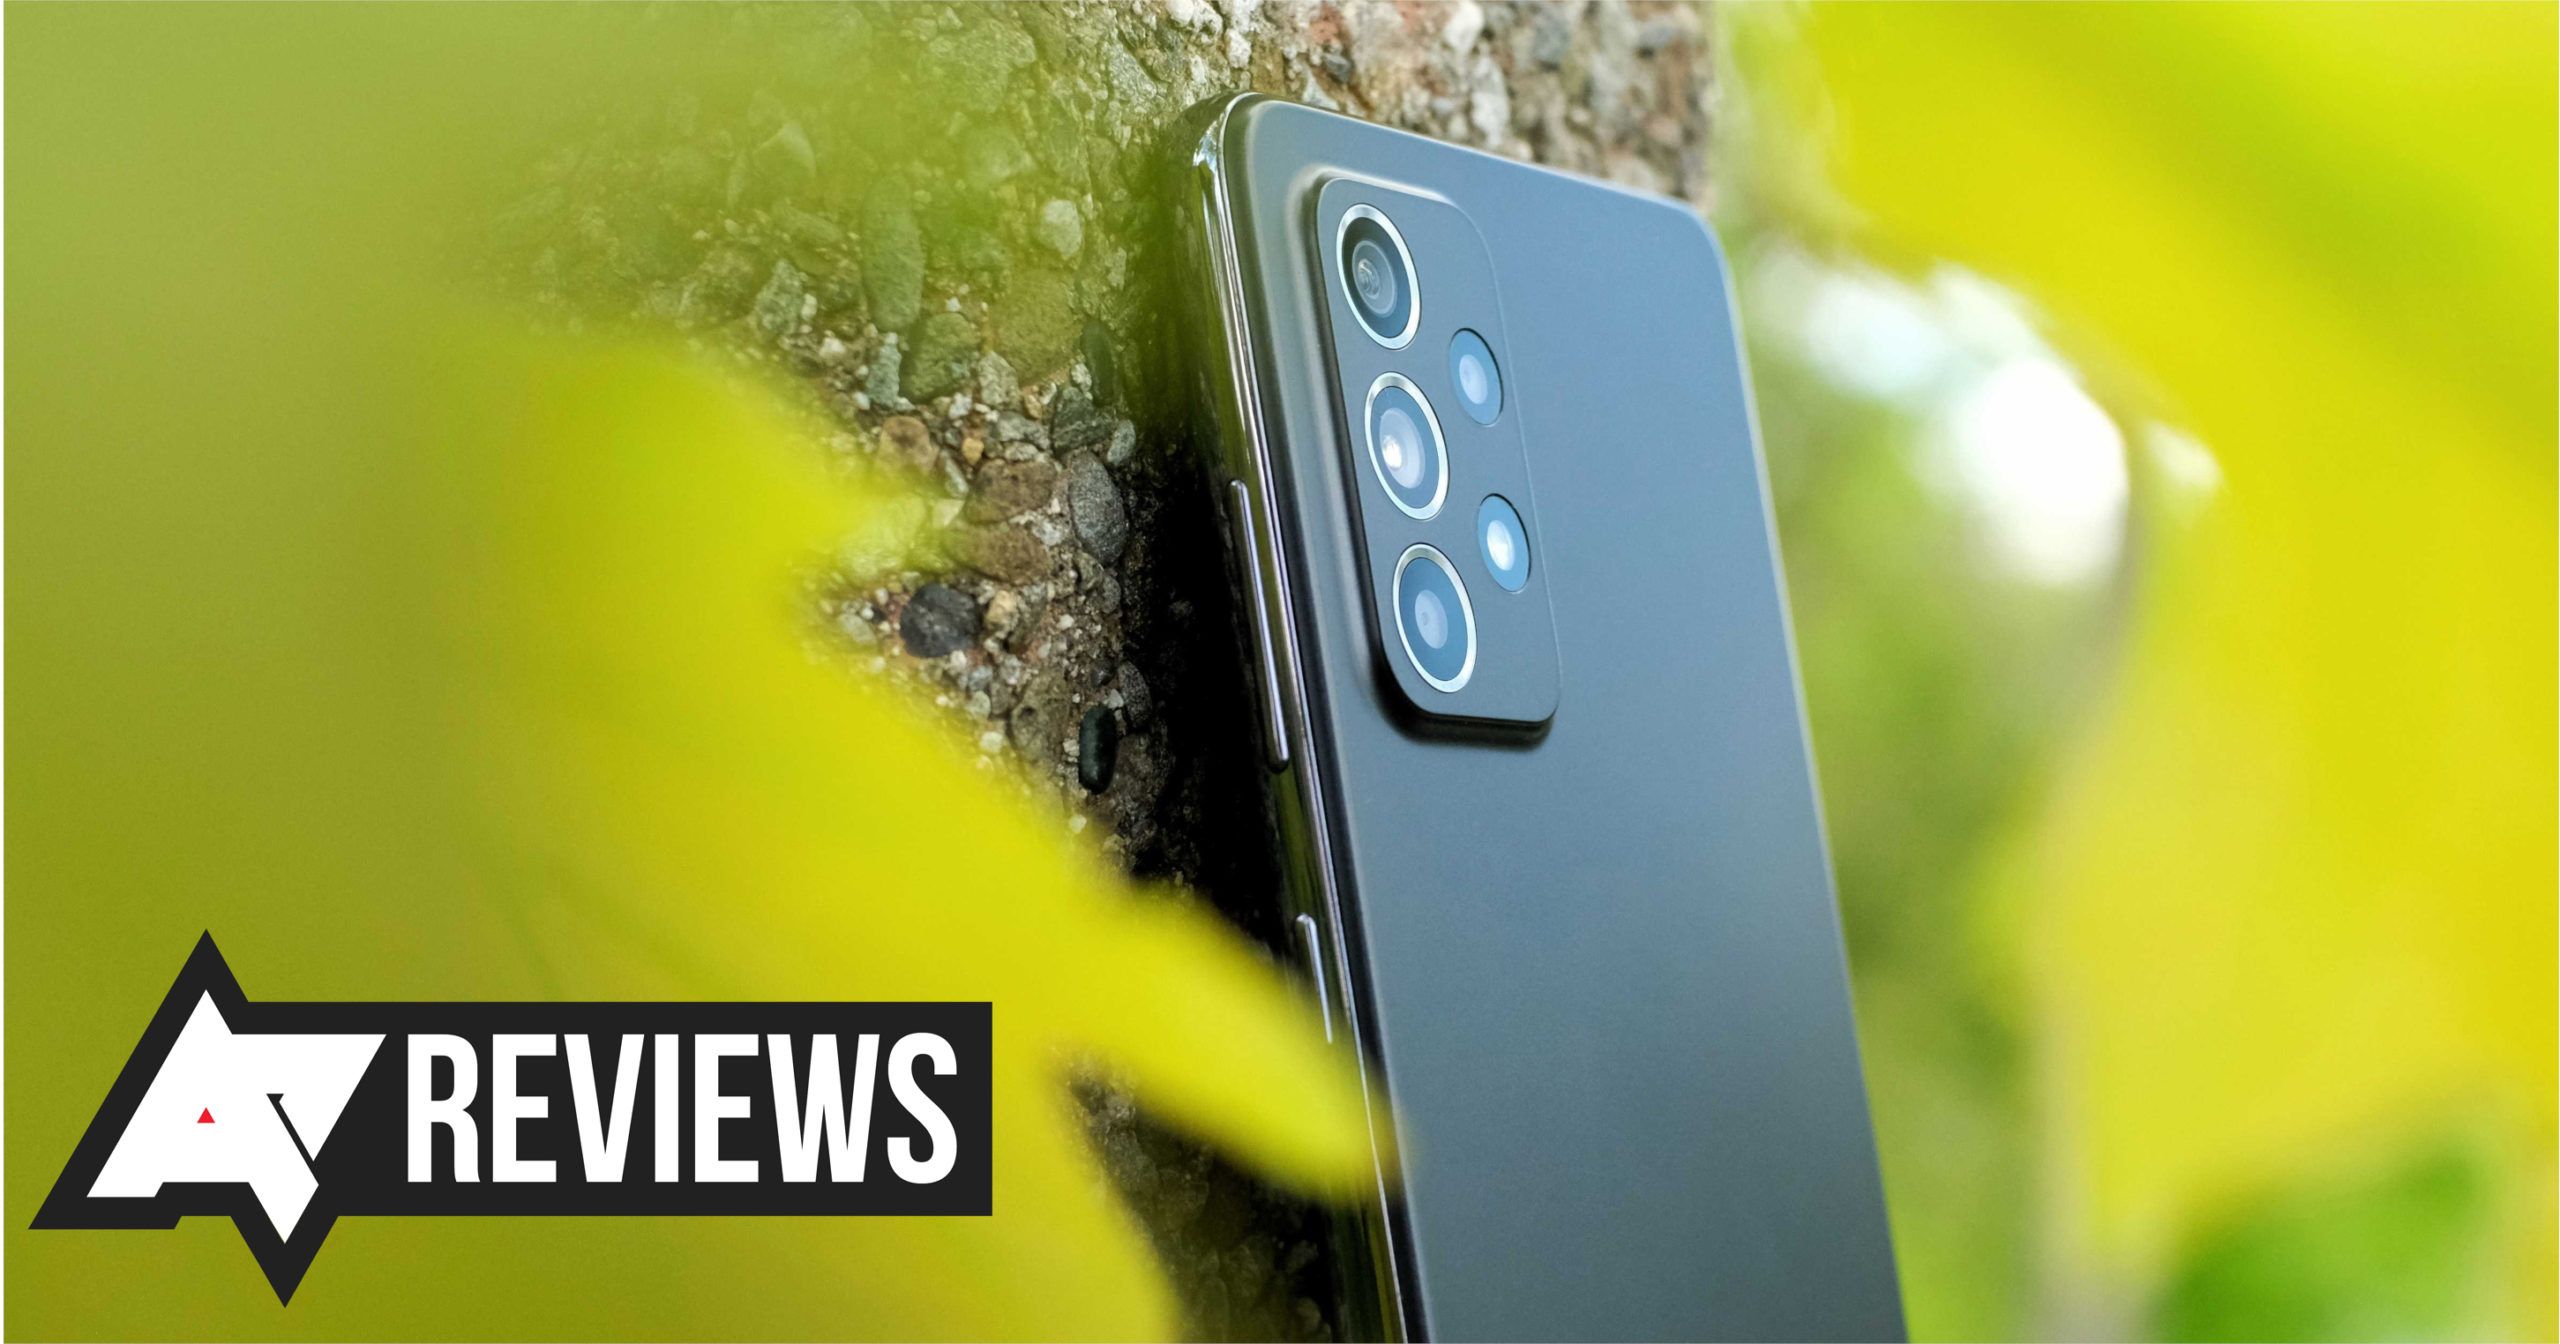 Samsung Galaxy A52 long-term review: Regular phone